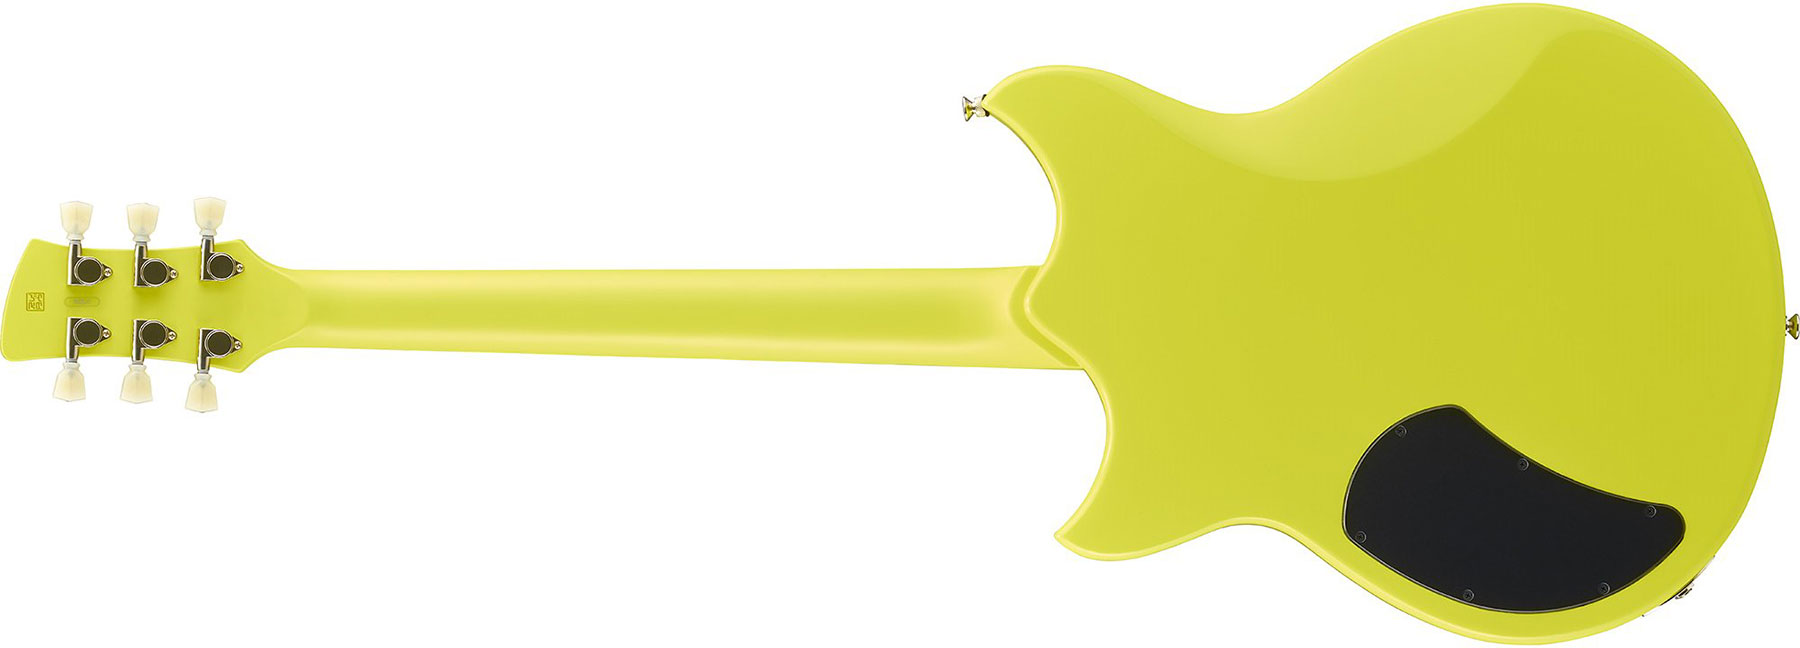 Yamaha Rse20 Revstar Element Hh Ht Rw - Neon Yellow - Guitarra eléctrica de doble corte. - Variation 2